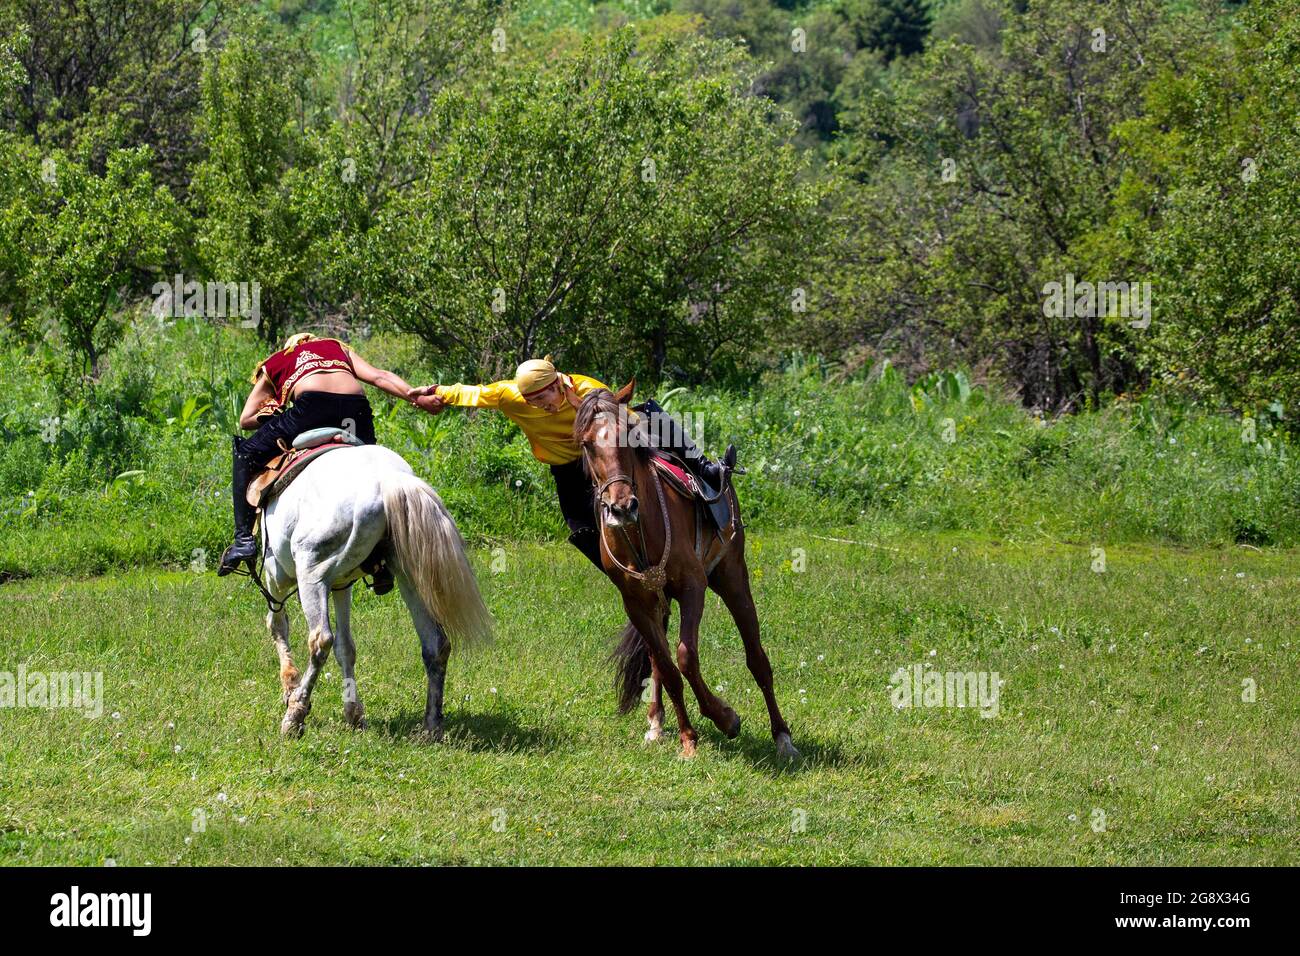 Kazakh men do traditional nomadic arm wrestling on their horse, in Kazakhstan. Stock Photo